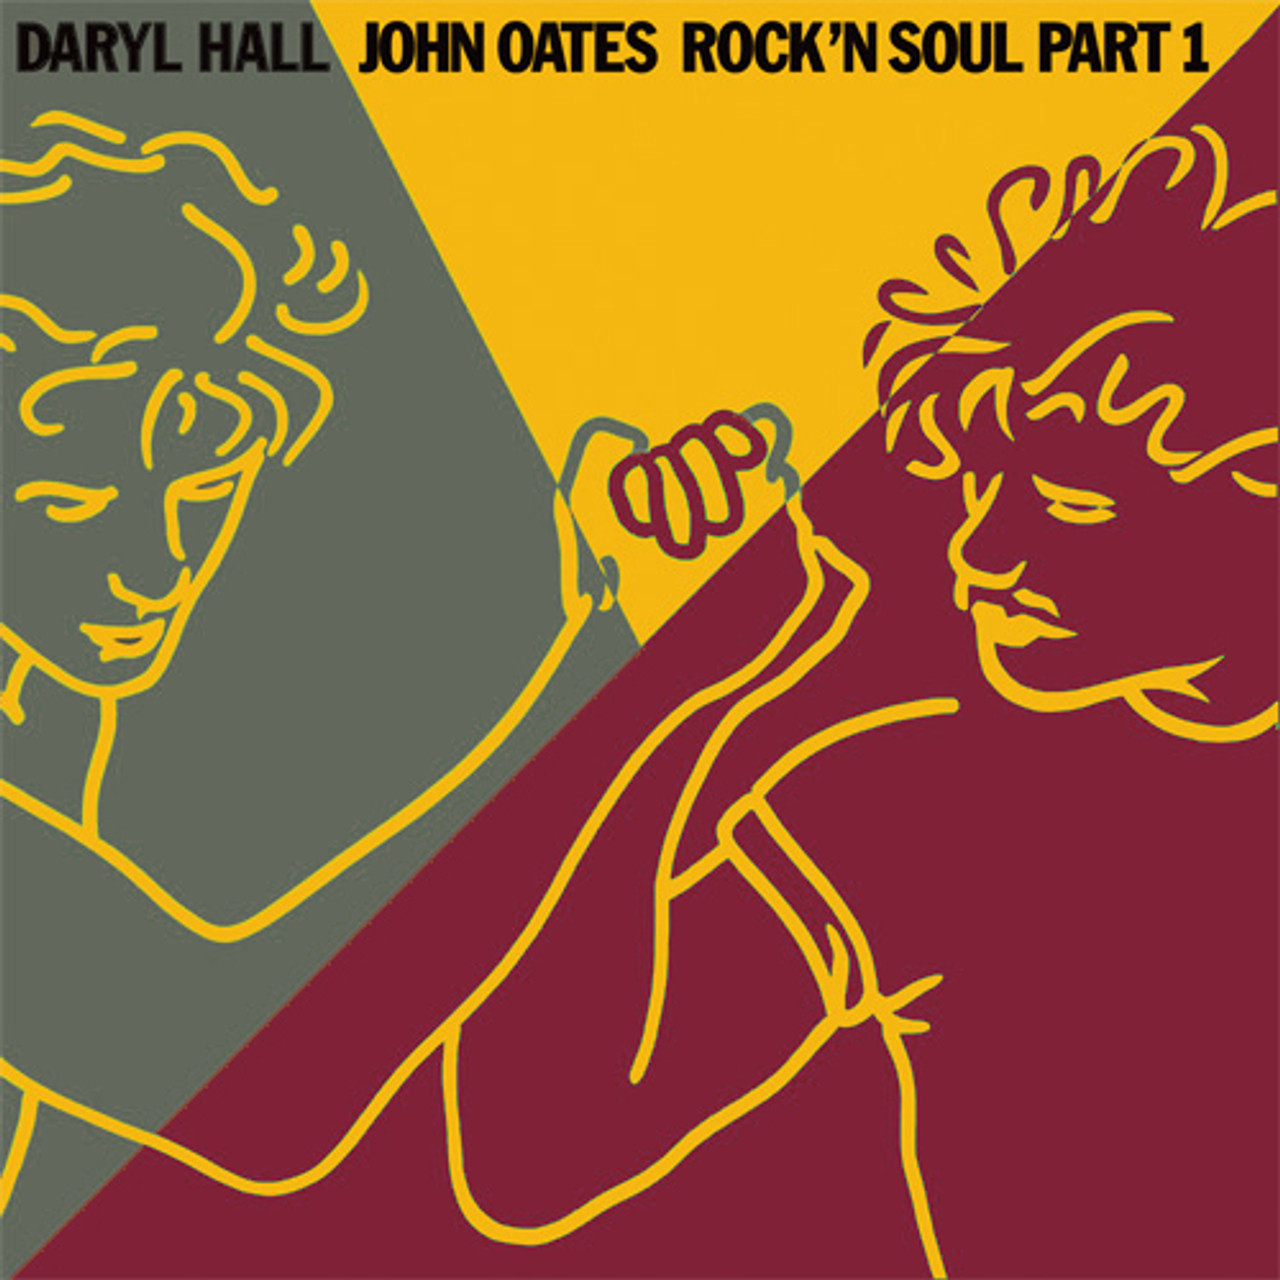 Hall & Oates Rock 'n Soul Part 1 LP